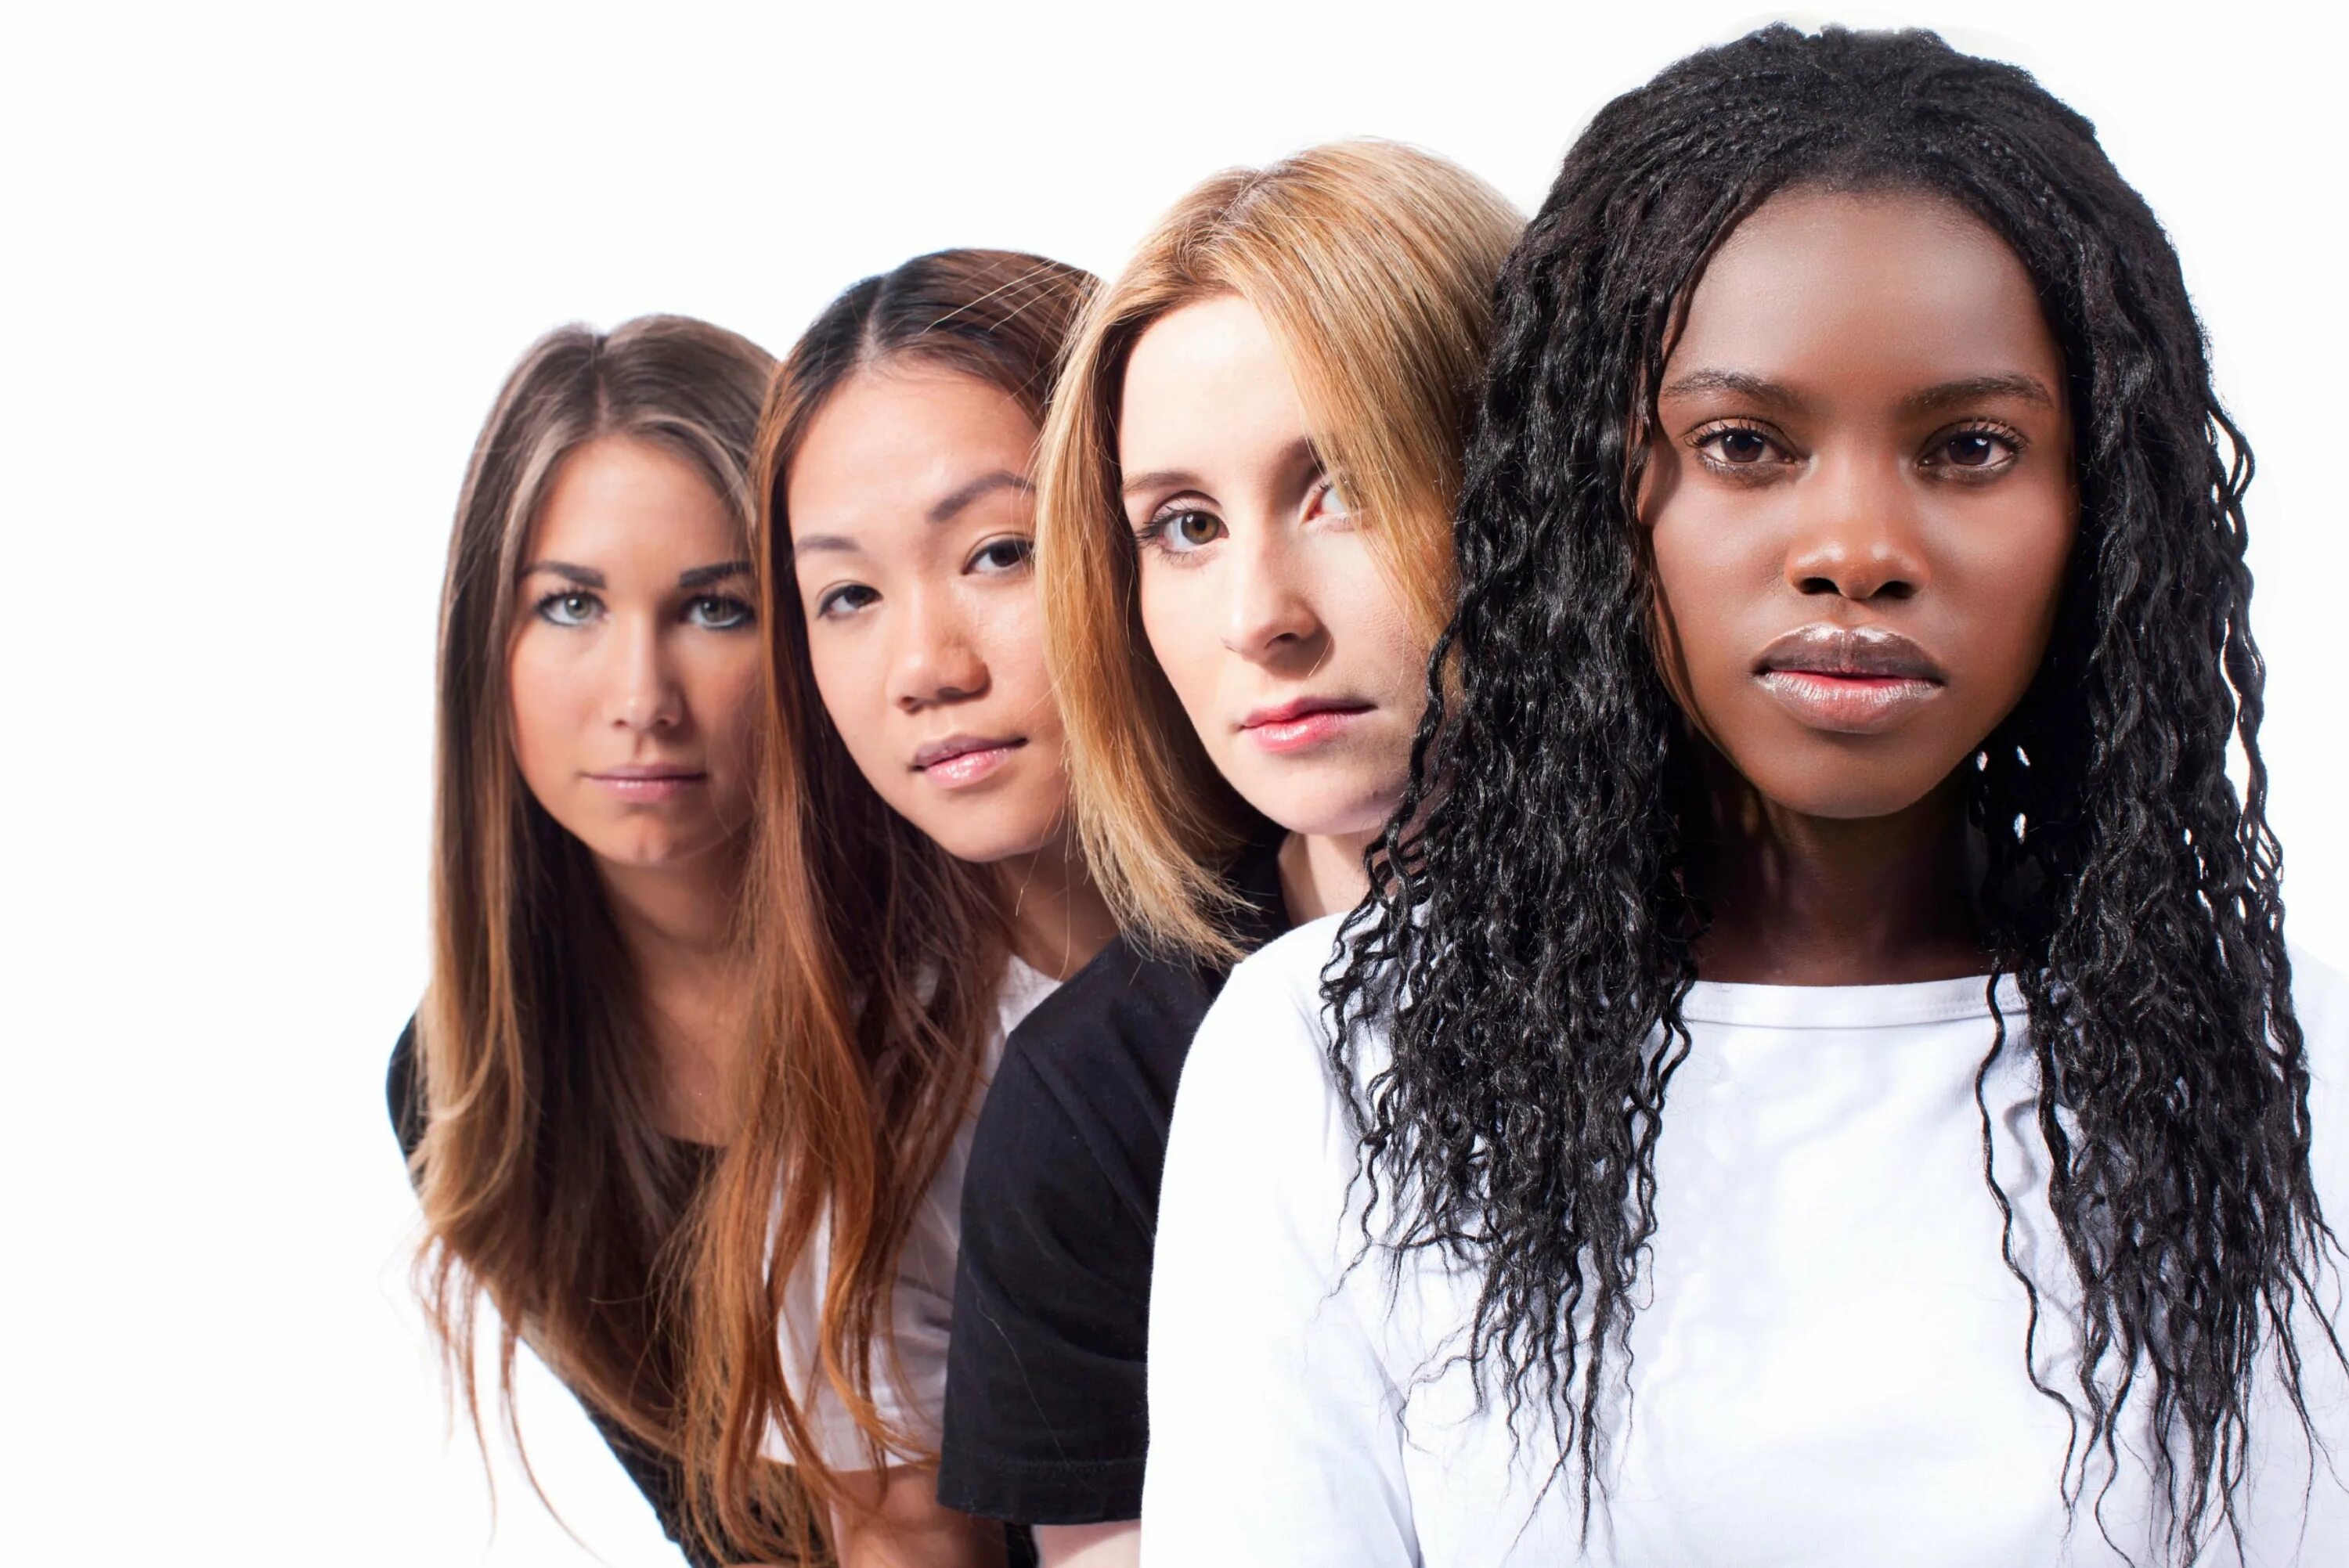 Different races. Люди разных рас. Девушки с разным цветом кожи. Разные расы. Разный цвет кожи.